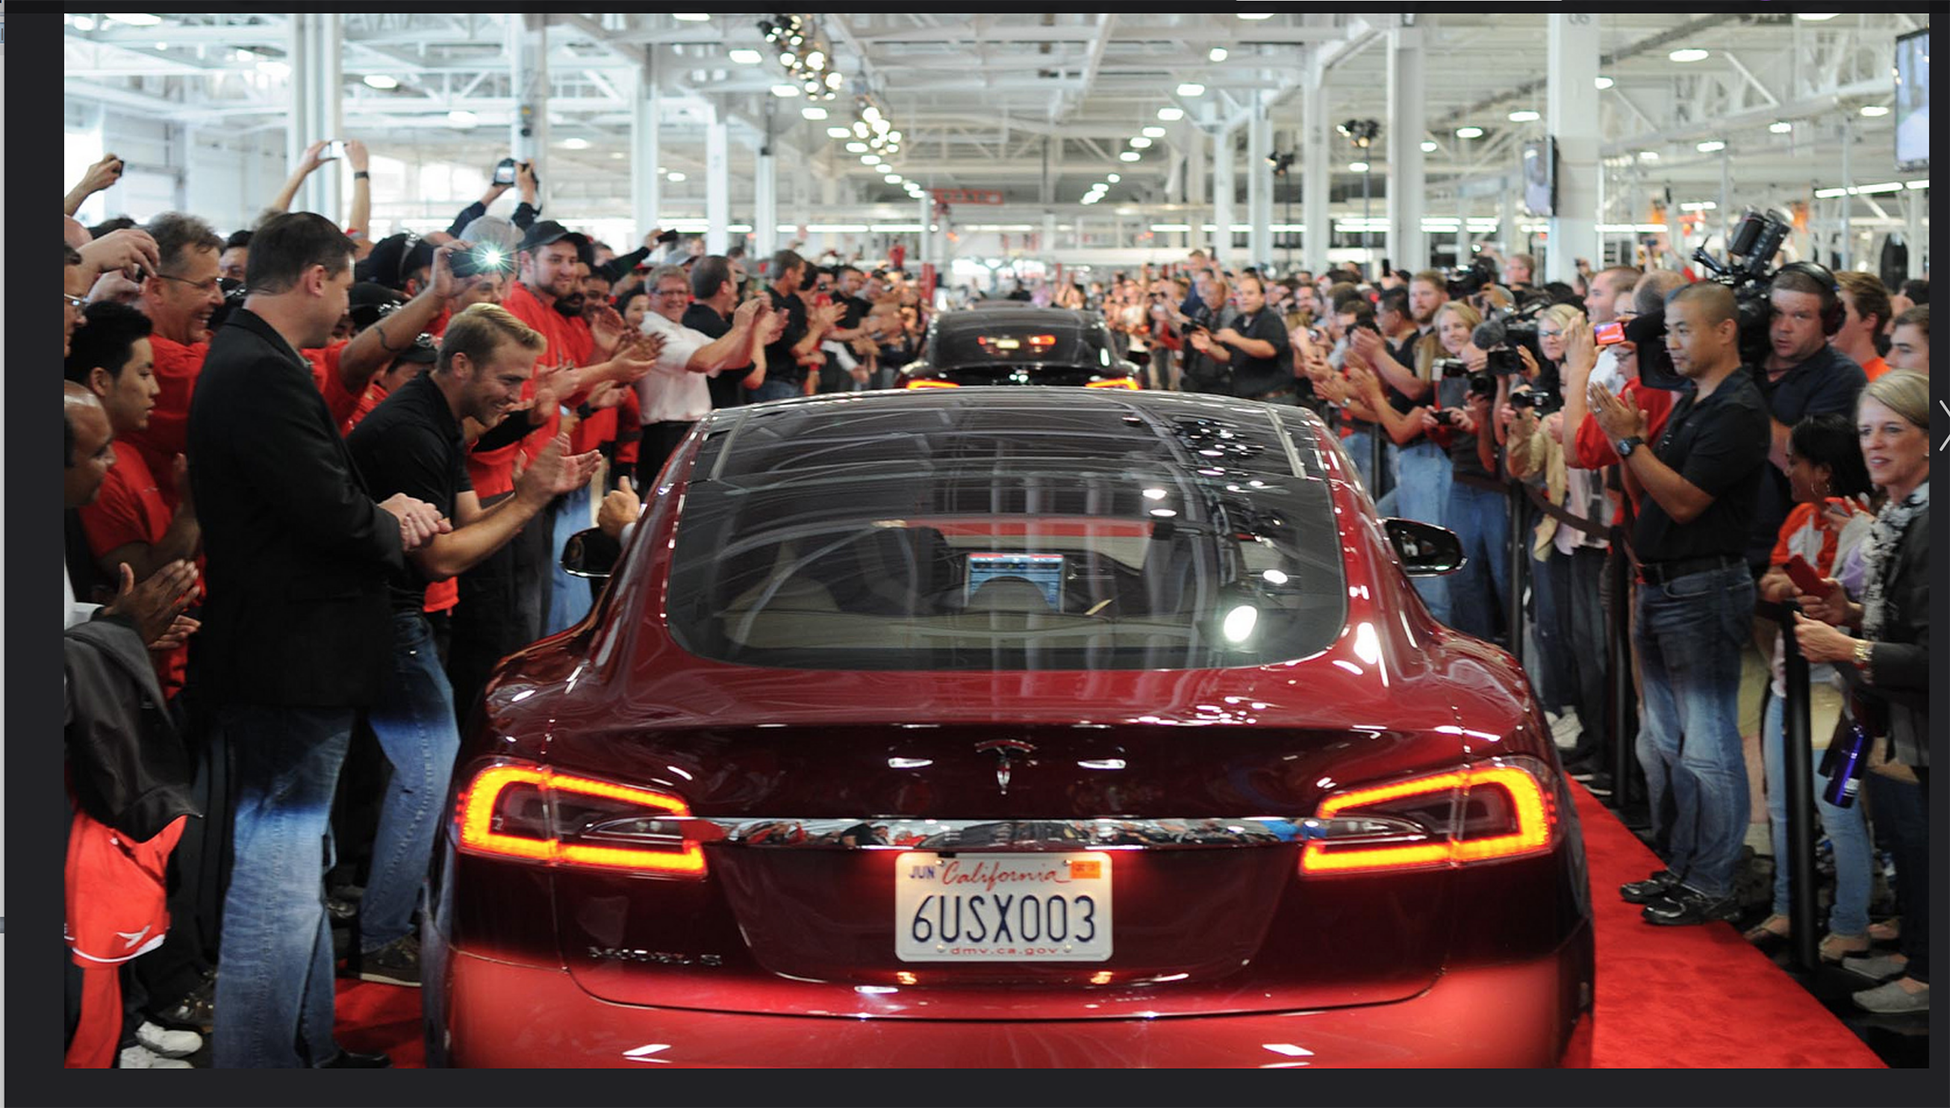 Une photographie montre une foule nombreuse encourageant une file de voitures Tesla roulant sur un tapis rouge.